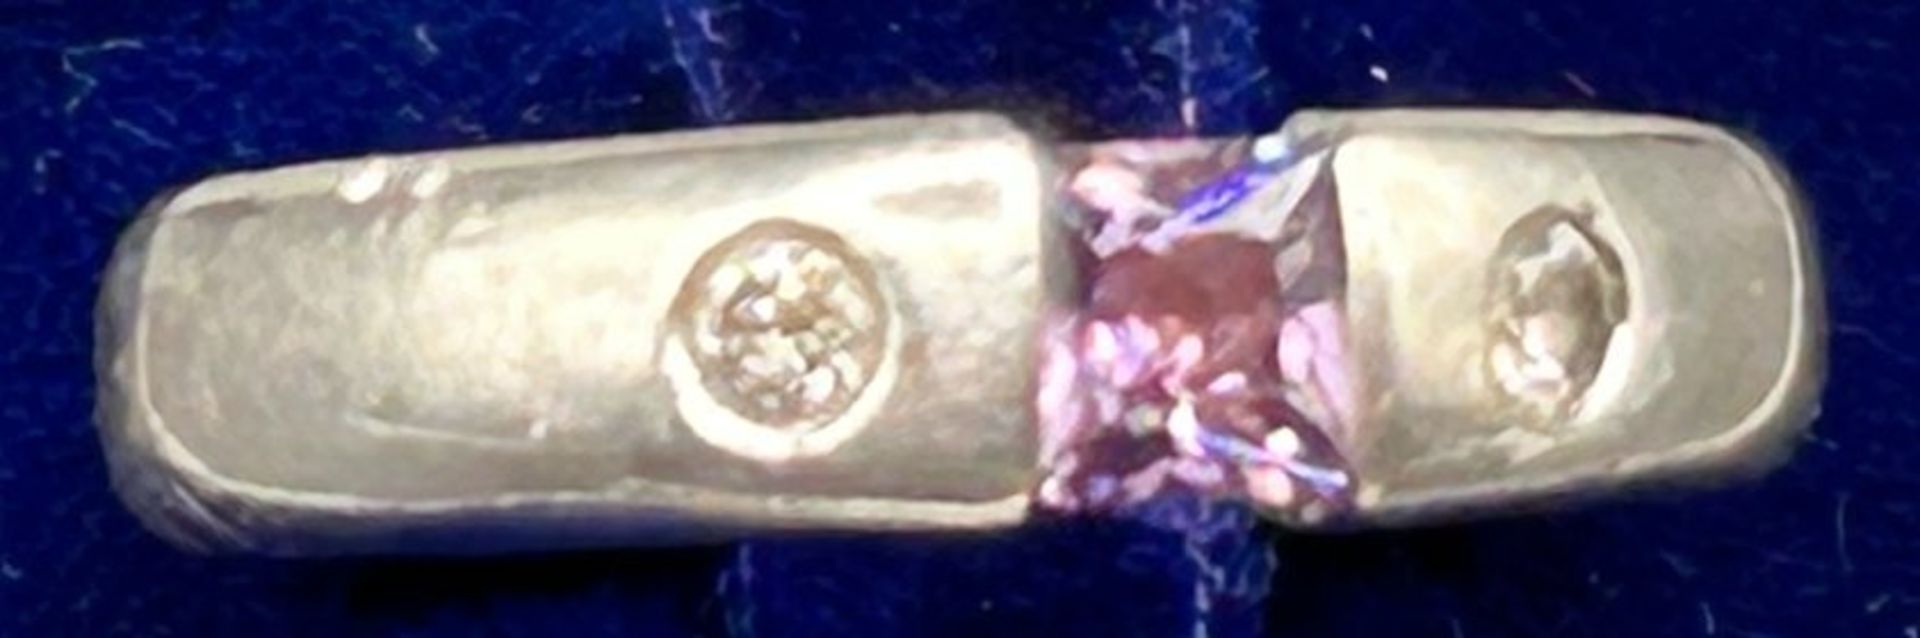 Silber-Spannring mit rosa Stein, 2 klare Steine, -925-RG 57, 6,9 gr.